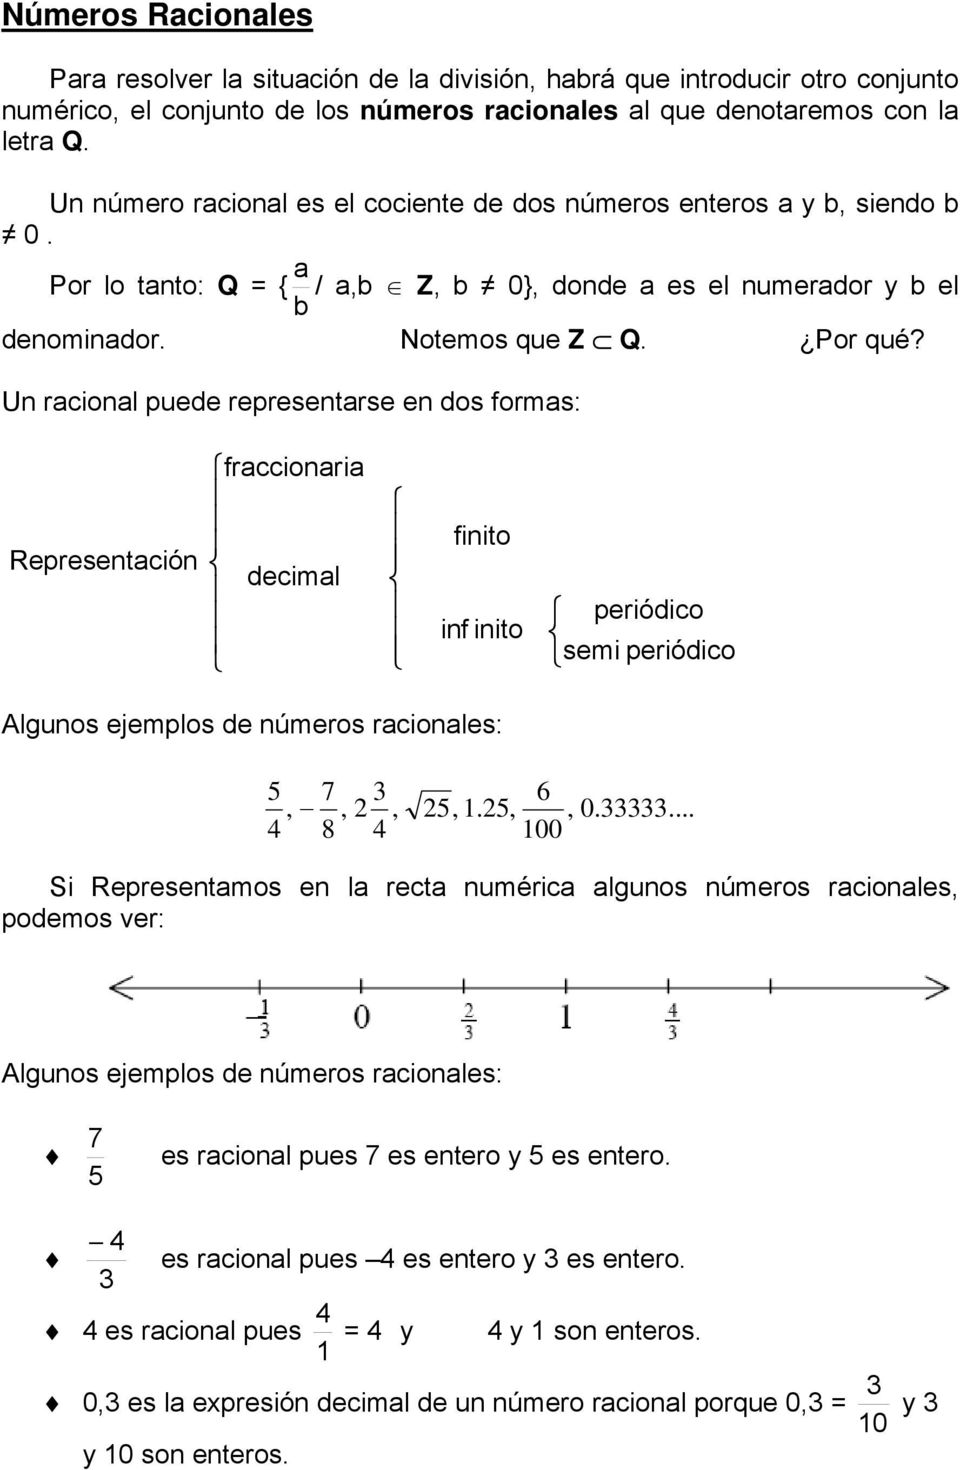 Un racional puede representarse en dos formas: Representación fraccionaria decimal finito inf inito periódico semi periódico Algunos ejemplos de números racionales: 5, 7, 8 2, 6 25,.25,, 00 0.